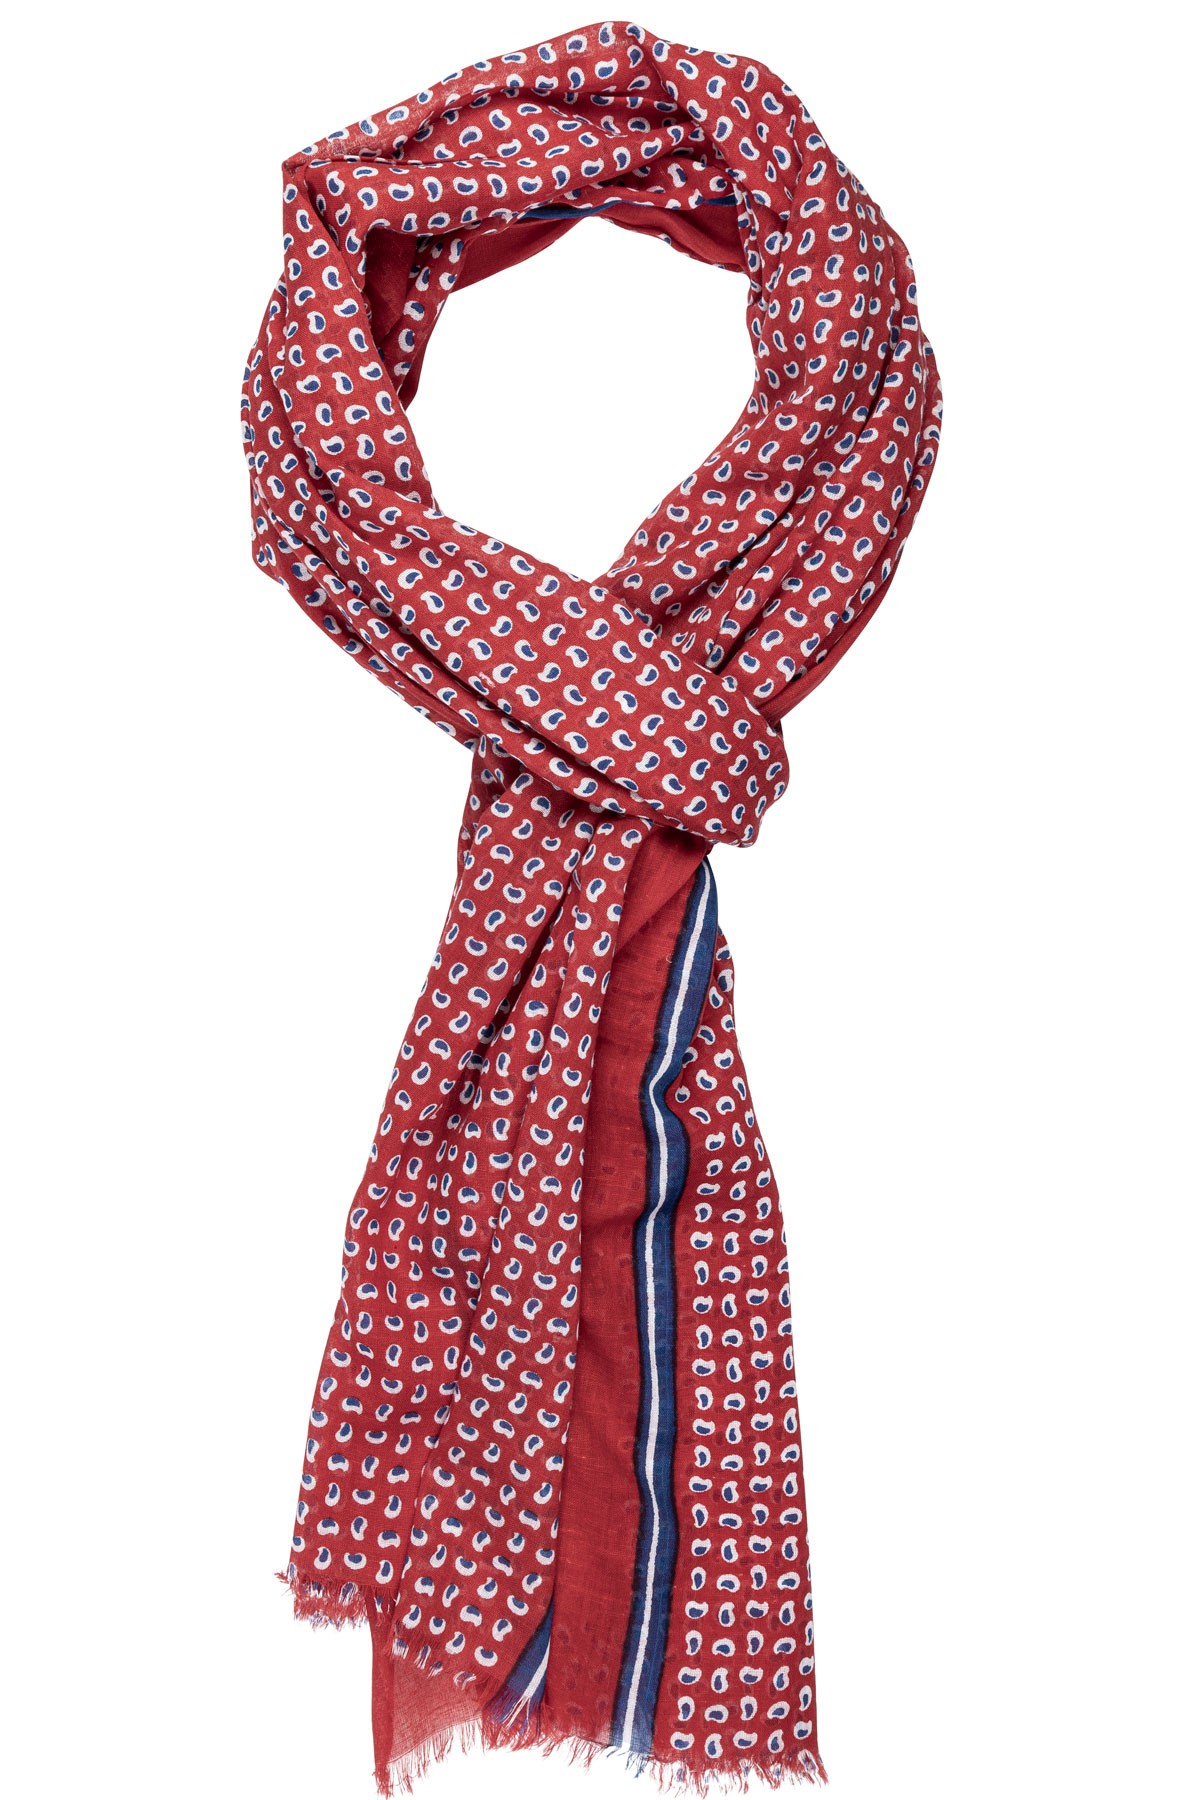 écharpe en coton rouge et petits motifs bleu marine